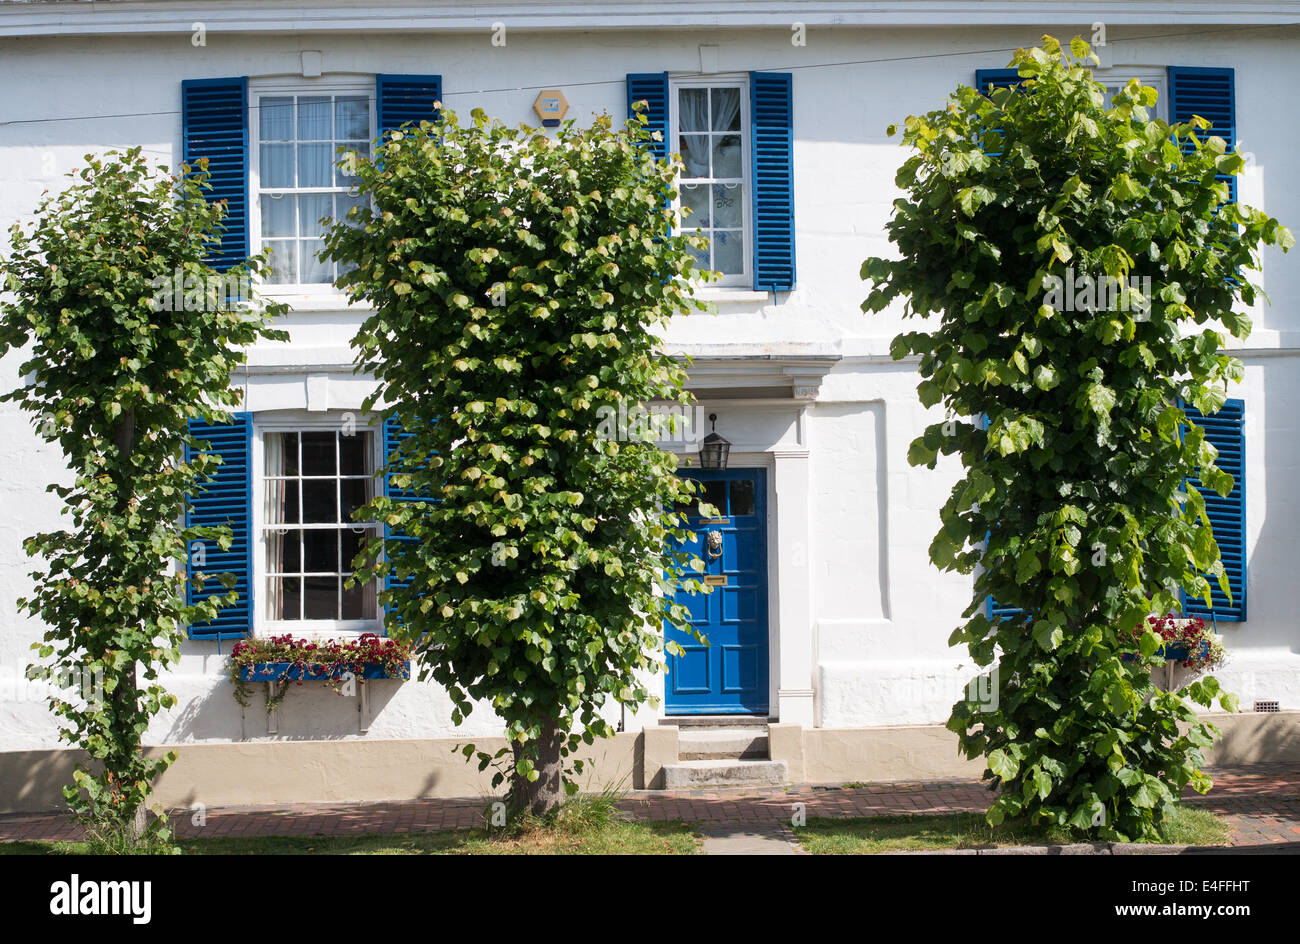 Das Weiße Haus, Doppel-fronted Zeitraum Haus mit blauen Fensterläden Burwash, East Sussex, England, Großbritannien Stockfoto